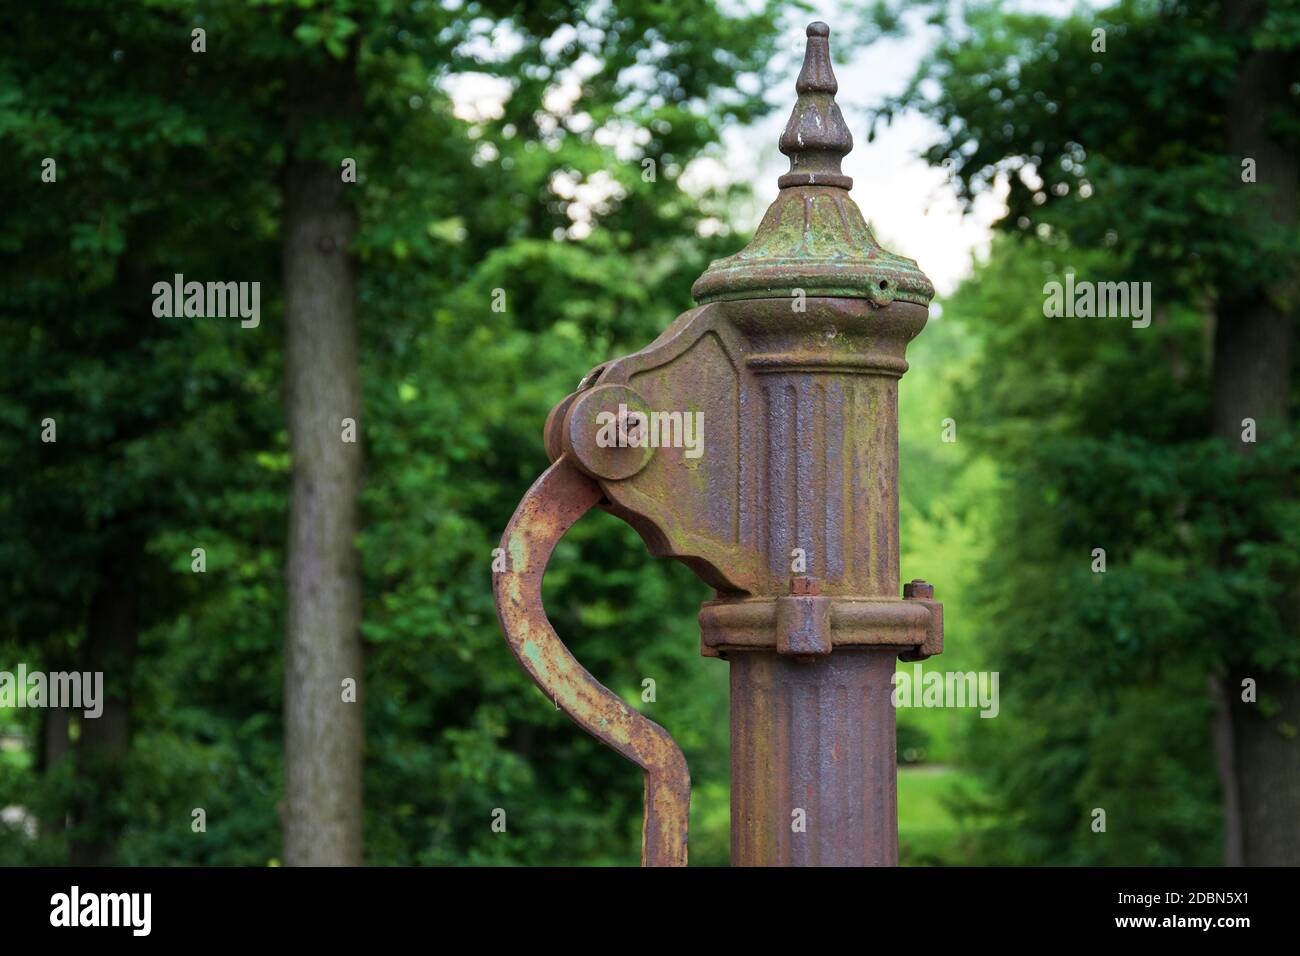 Handwasserpumpe. Alte manuelle Pumpe Brunnen im Park. Foto des alten Stils gut Objekt. Alte antike Metallmechanik. Stockfoto